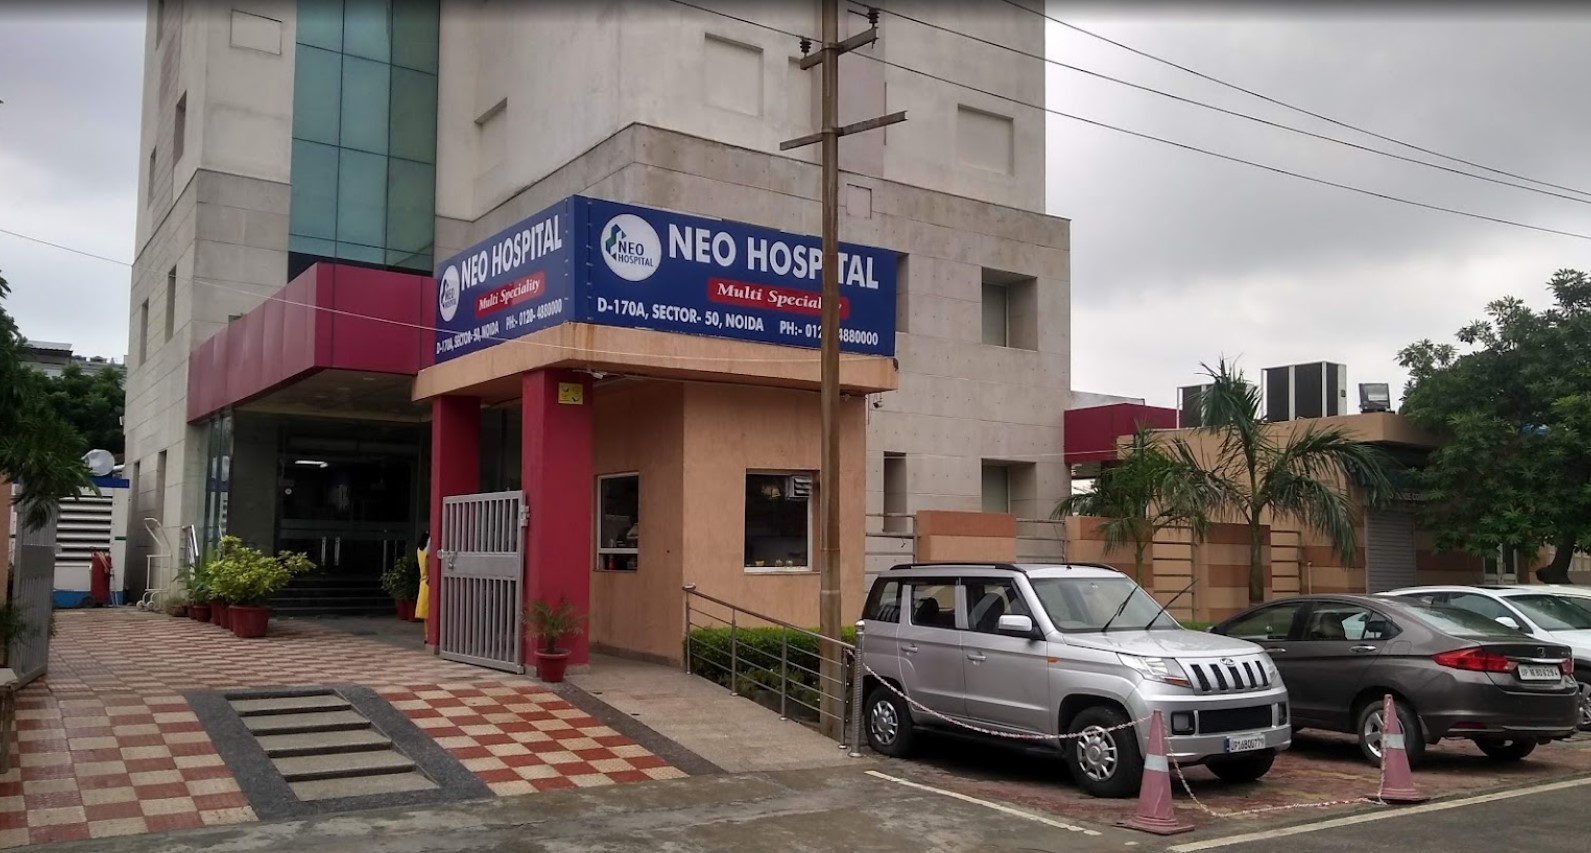 Neo Hospital photo